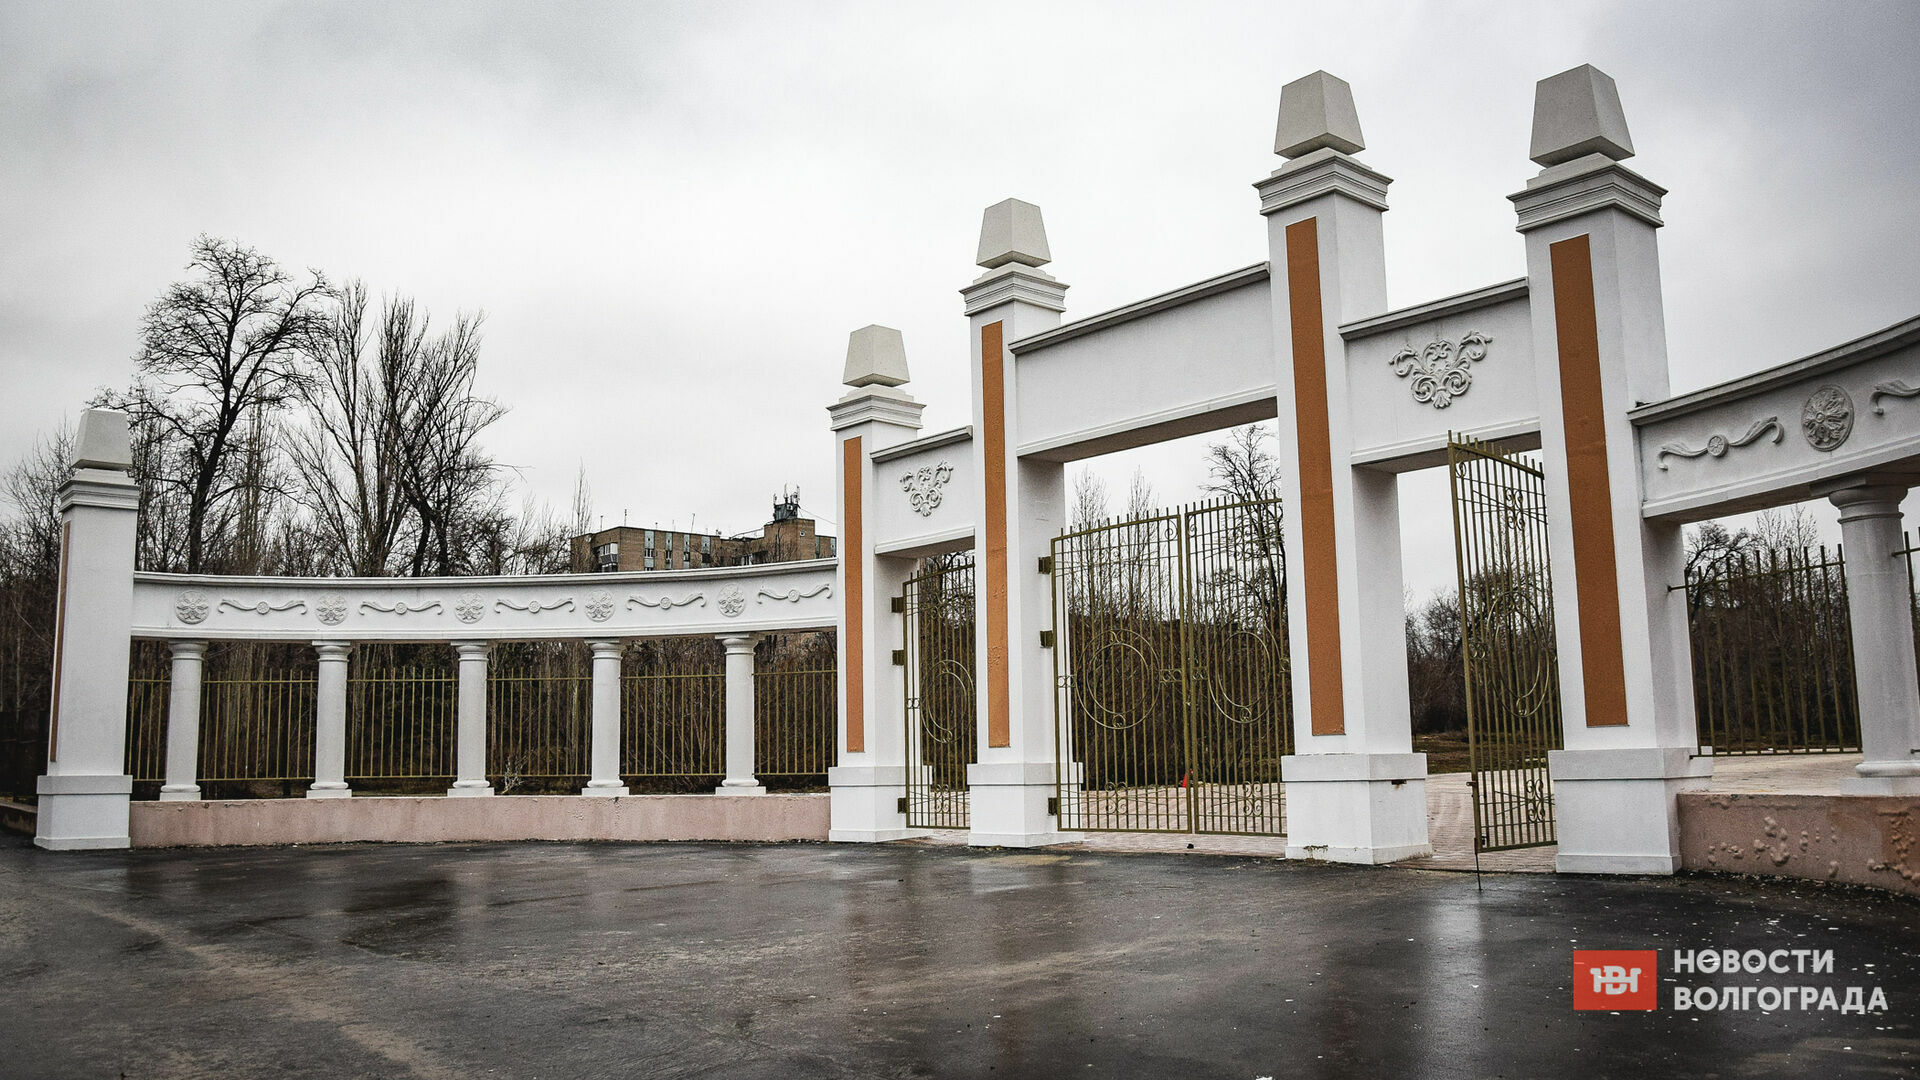 «Это показуха»: в Волгограде назревает скандал из-за некачественной реставрации парка